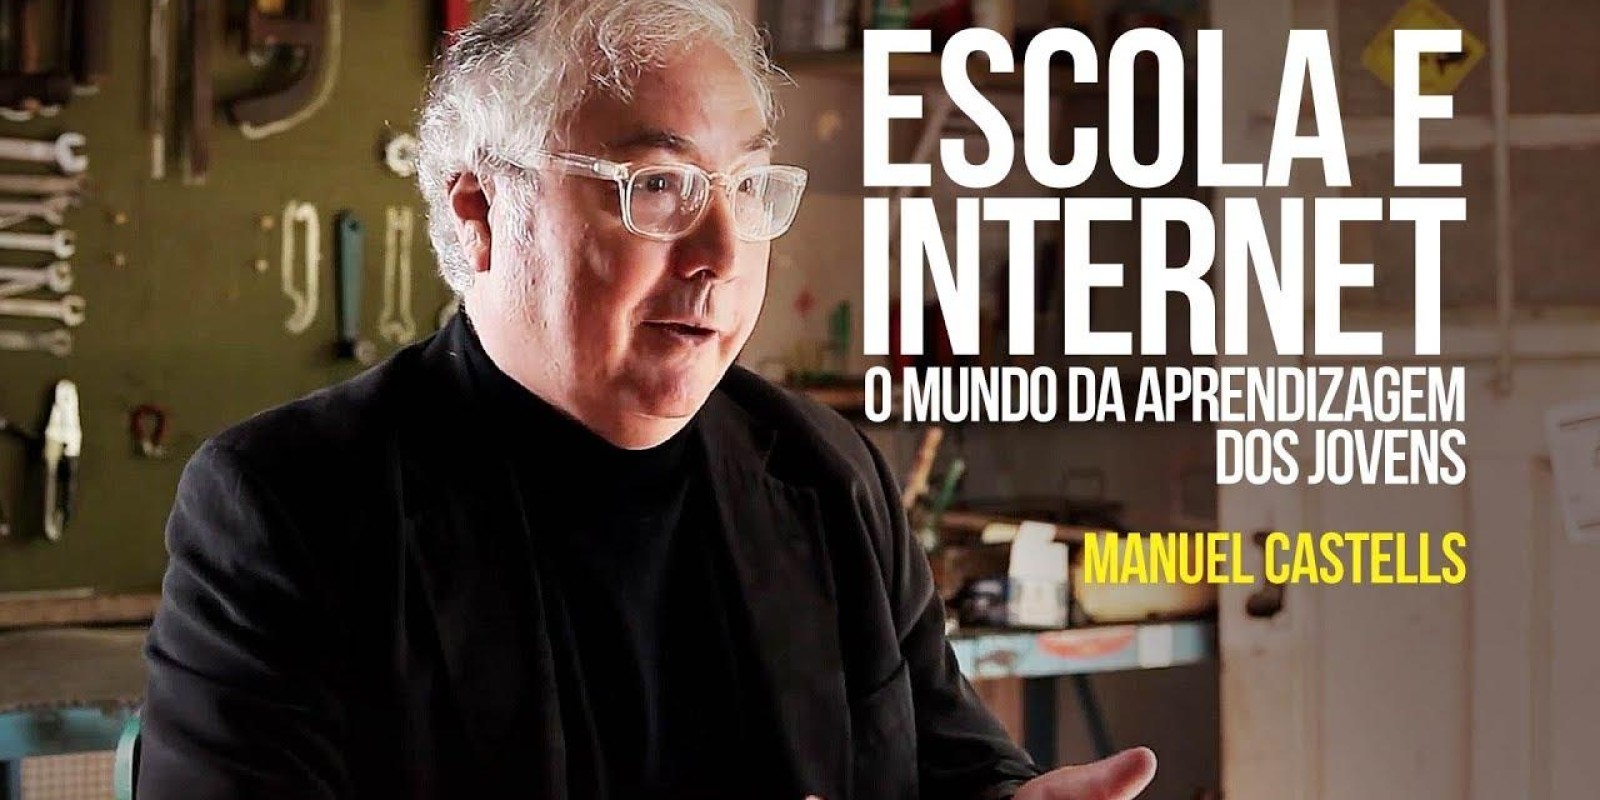 Manuel Castells - Escola e internet: o mundo da aprendizagem dos jovens